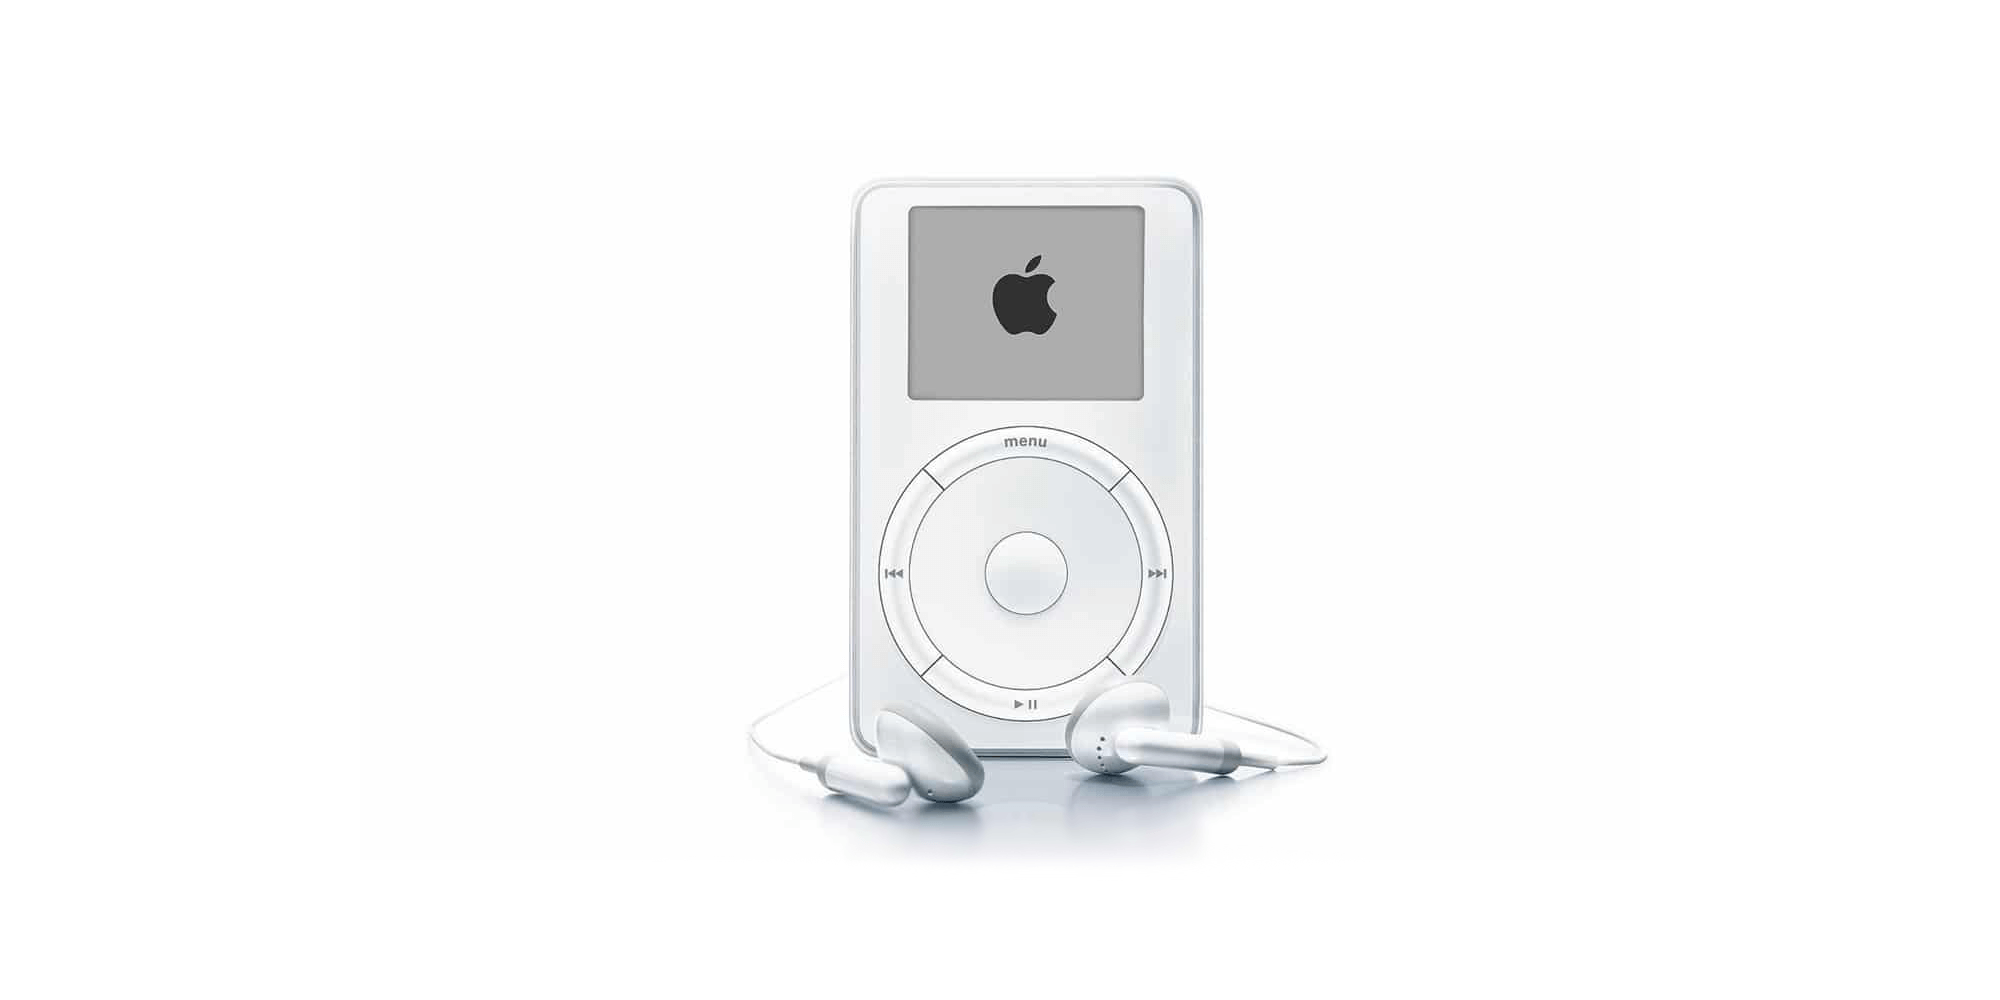 El iPod cumple 18 años, como se vio su lanzamiento en 2001